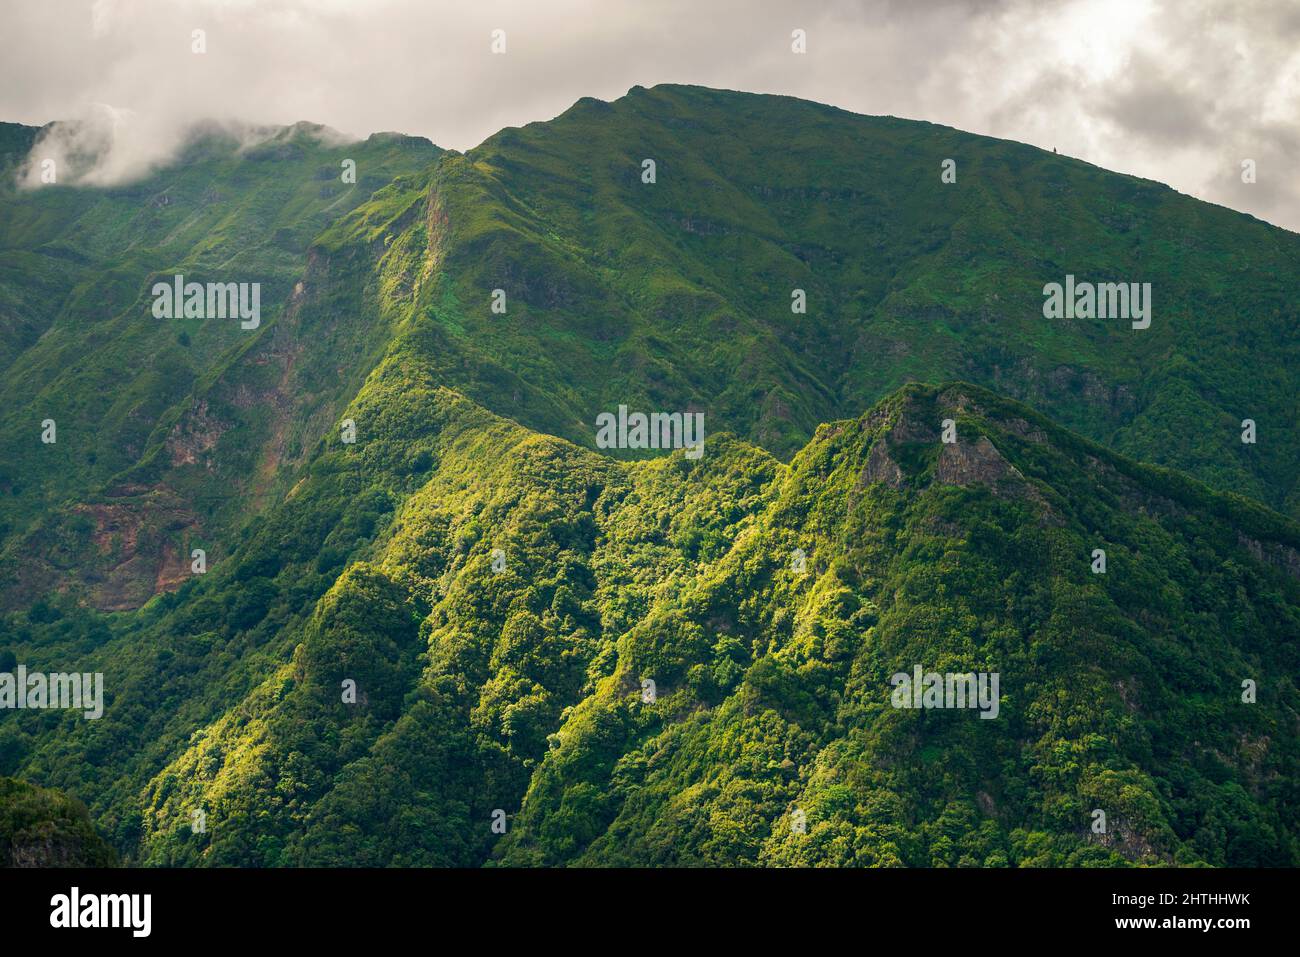 Crêtes de montagne vertes de l'île de Madère par jour nuageux Banque D'Images